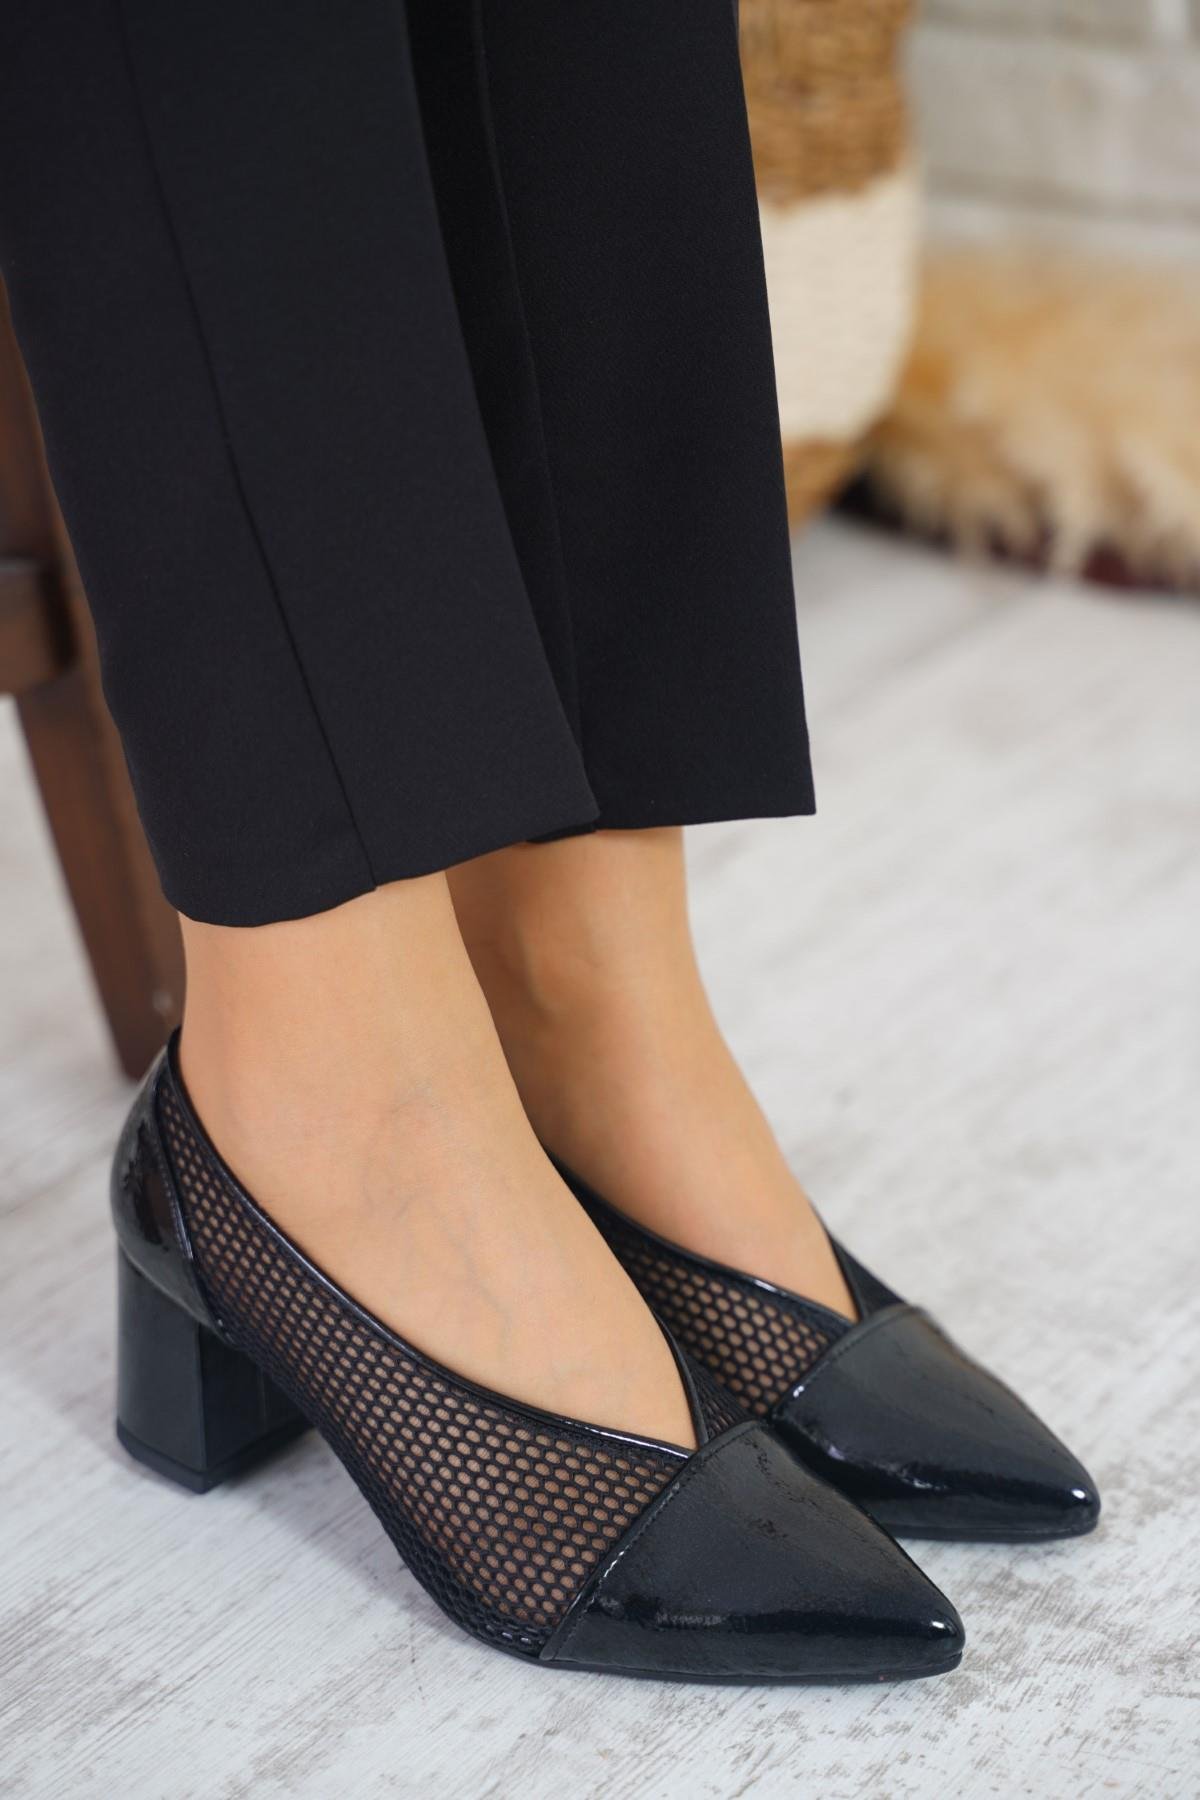 Callie Yan Açık File Kadın Topuklu Ayakkabı Siyah Rugan